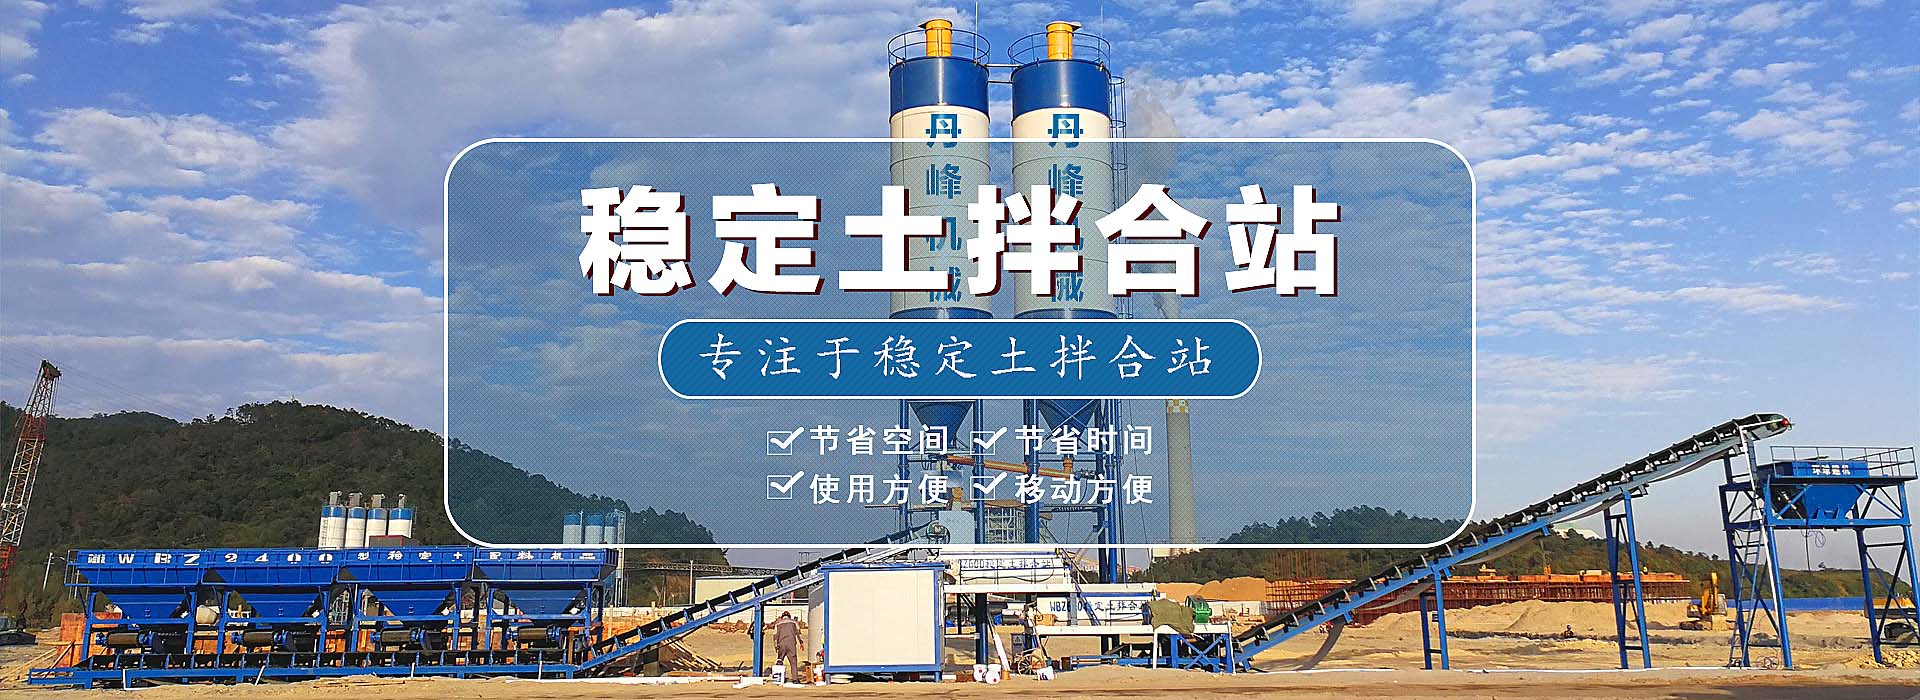 混凝土攪拌站,穩定土拌合站-鄭州丹峰機械設備制造有限公司